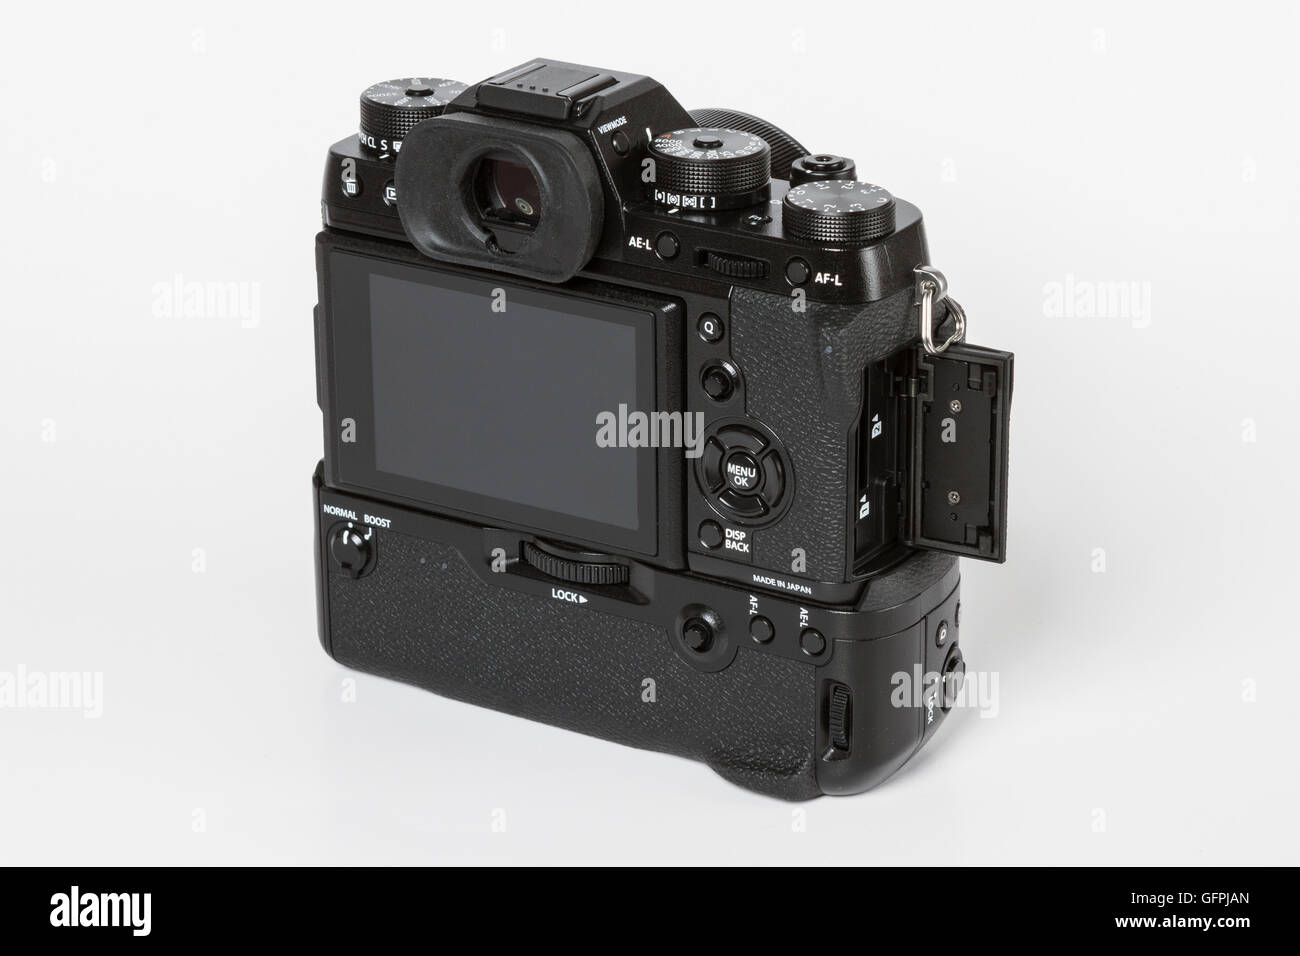 FUJIFILM X-T2, 24 mégapixels, l'appareil photo mirrorless et avec une autre batterie grip de l'arrière avec double porte ouverte mémoire SD Banque D'Images